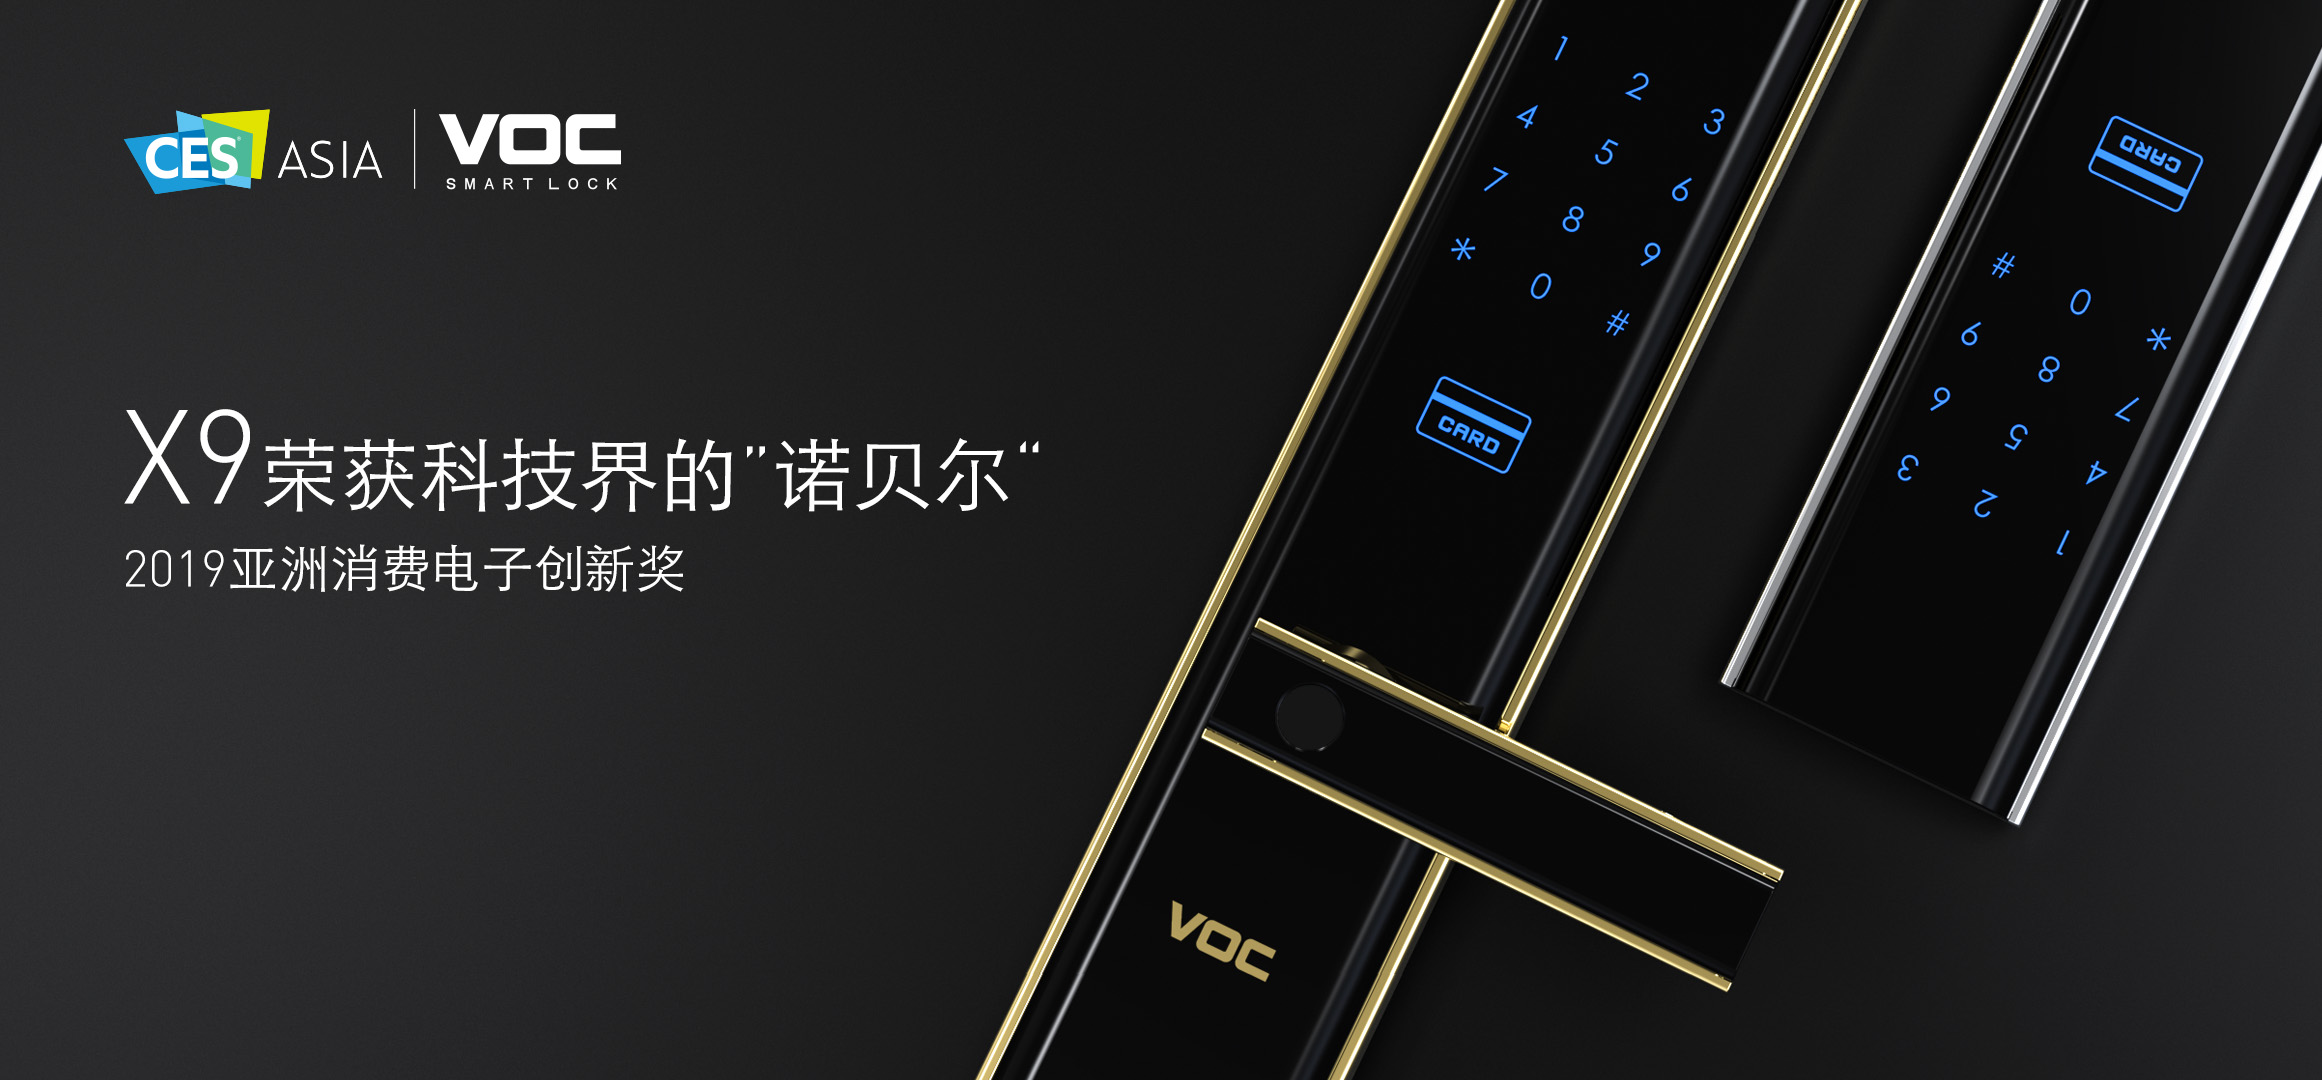 VOC & CES Asia | X9震撼亮相亚洲消费电子展，一举夺得科技界的“诺贝尔”奖！